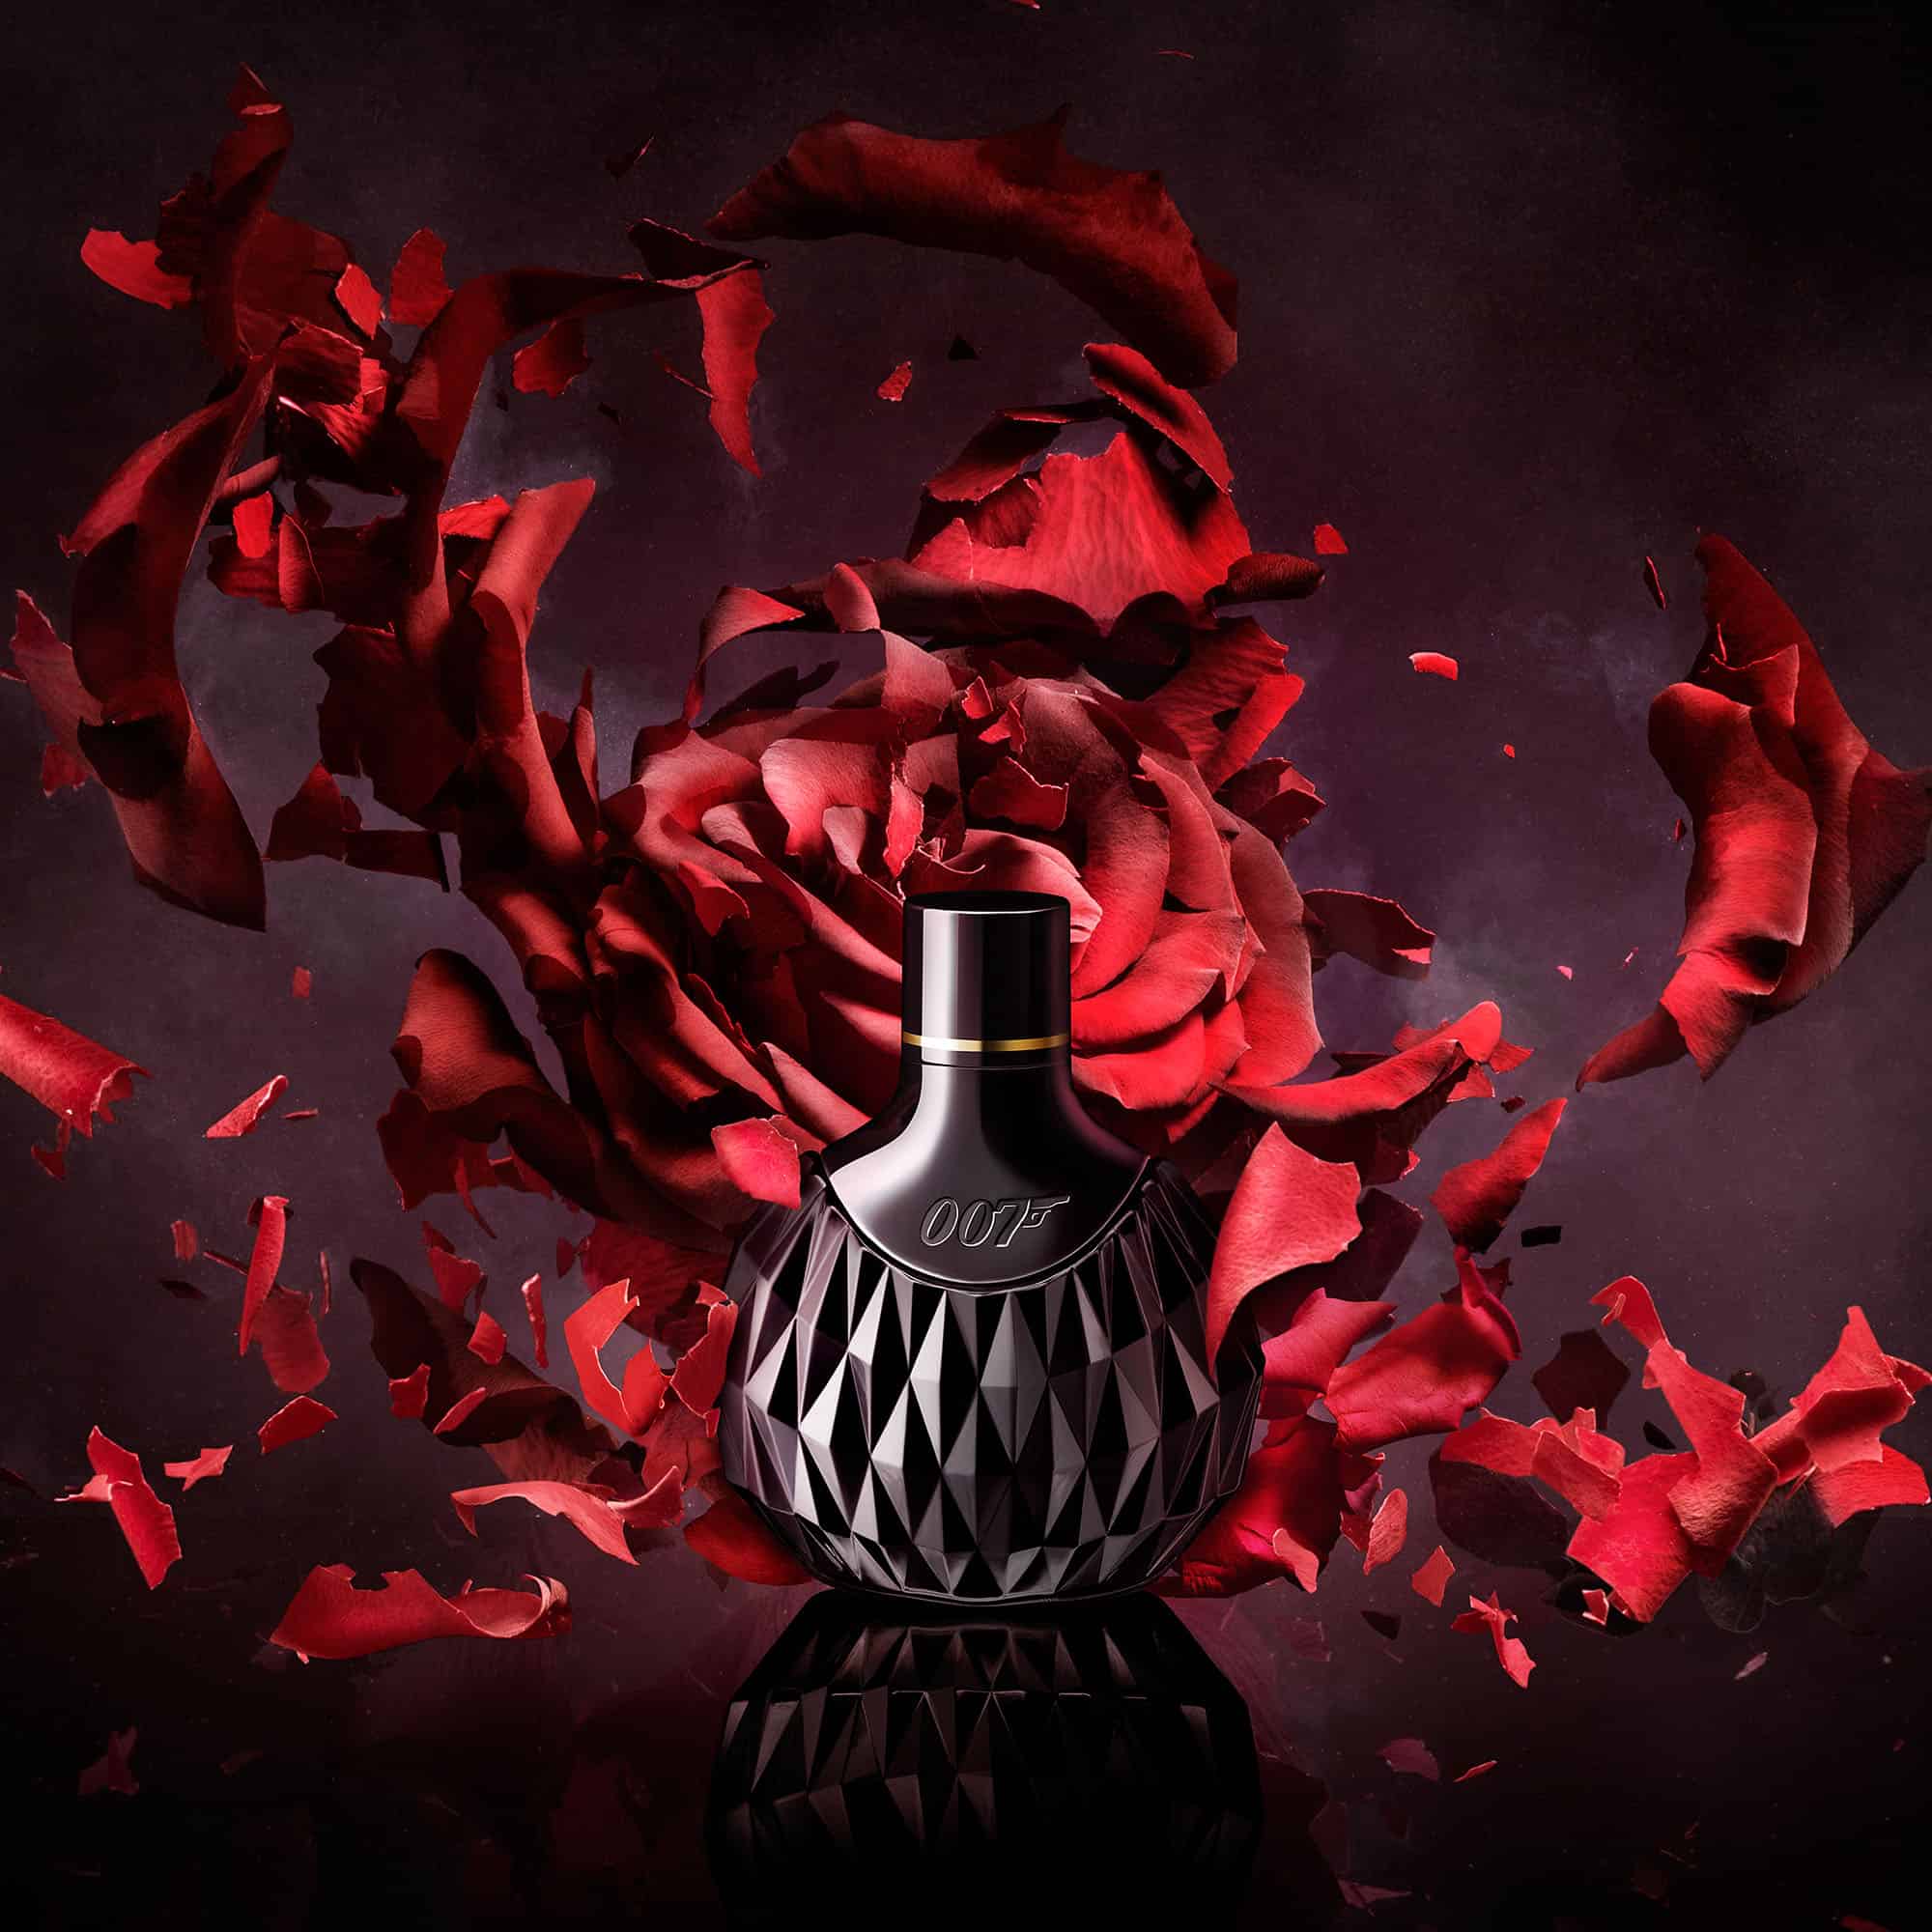 007 For Women Eau de Parfum Exploding Red Rose Explosive Top 5 Explosive Photoshoots